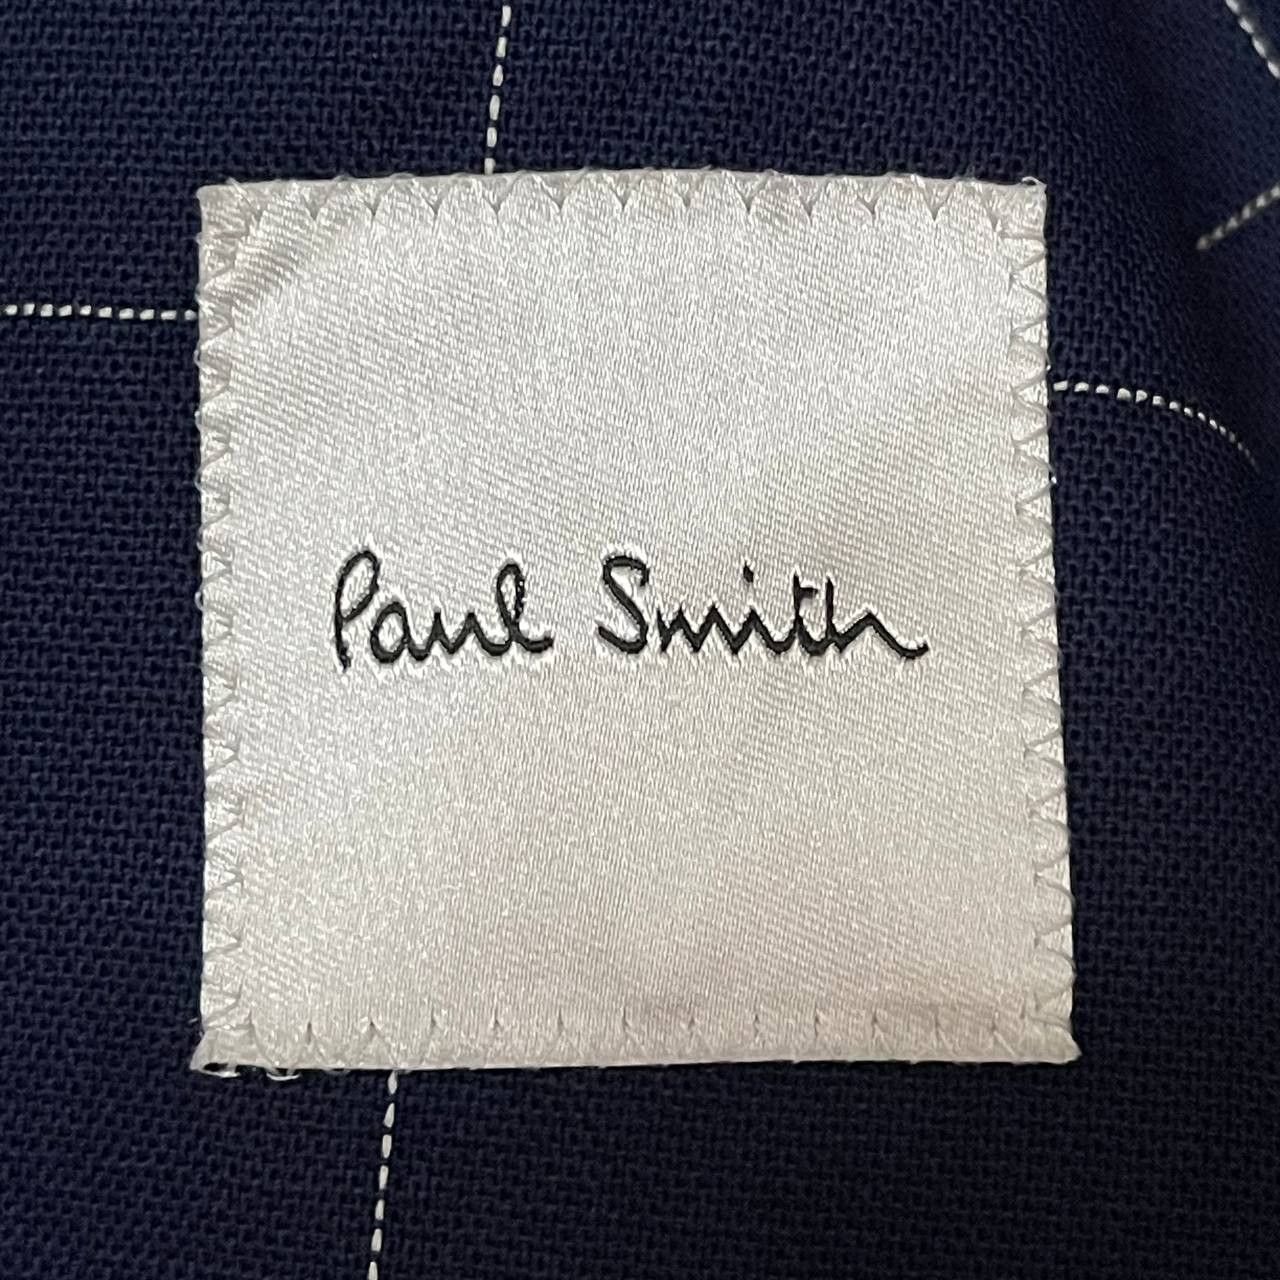 Paul Smith by Loro Piana Plaid Coat Jacket - 9